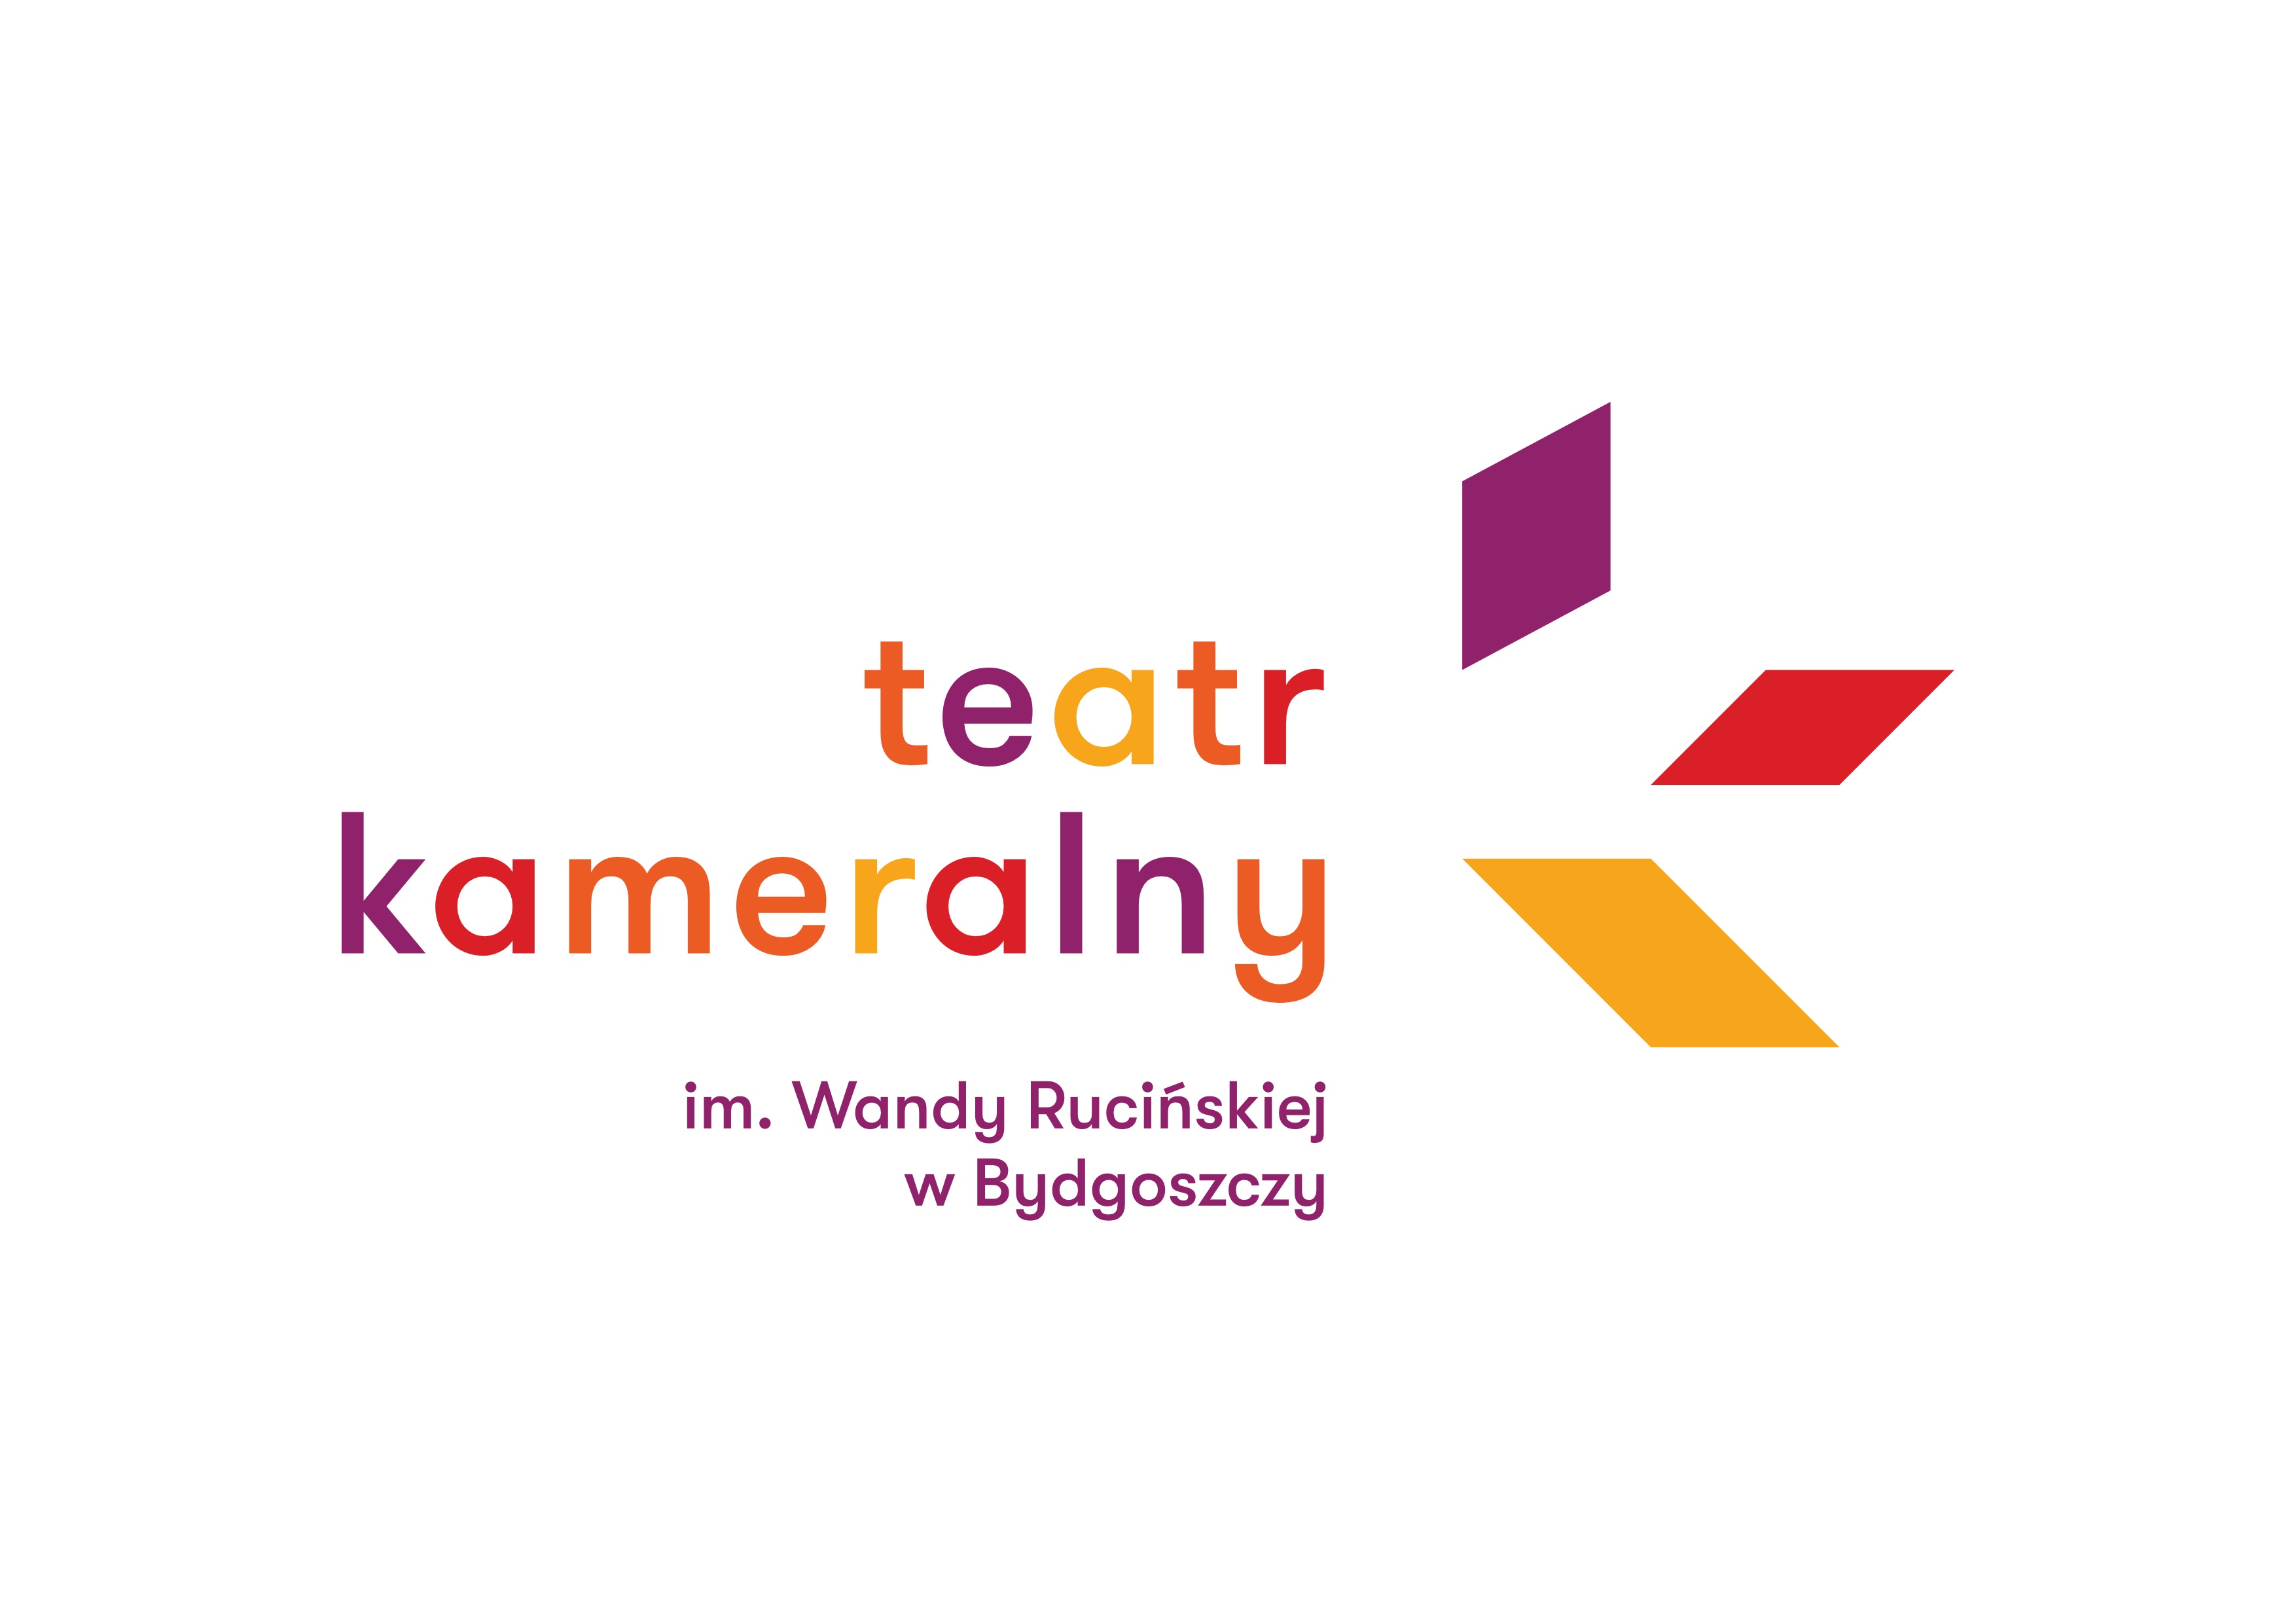 Logo Teatru Kameralnego w Bydgoszczy